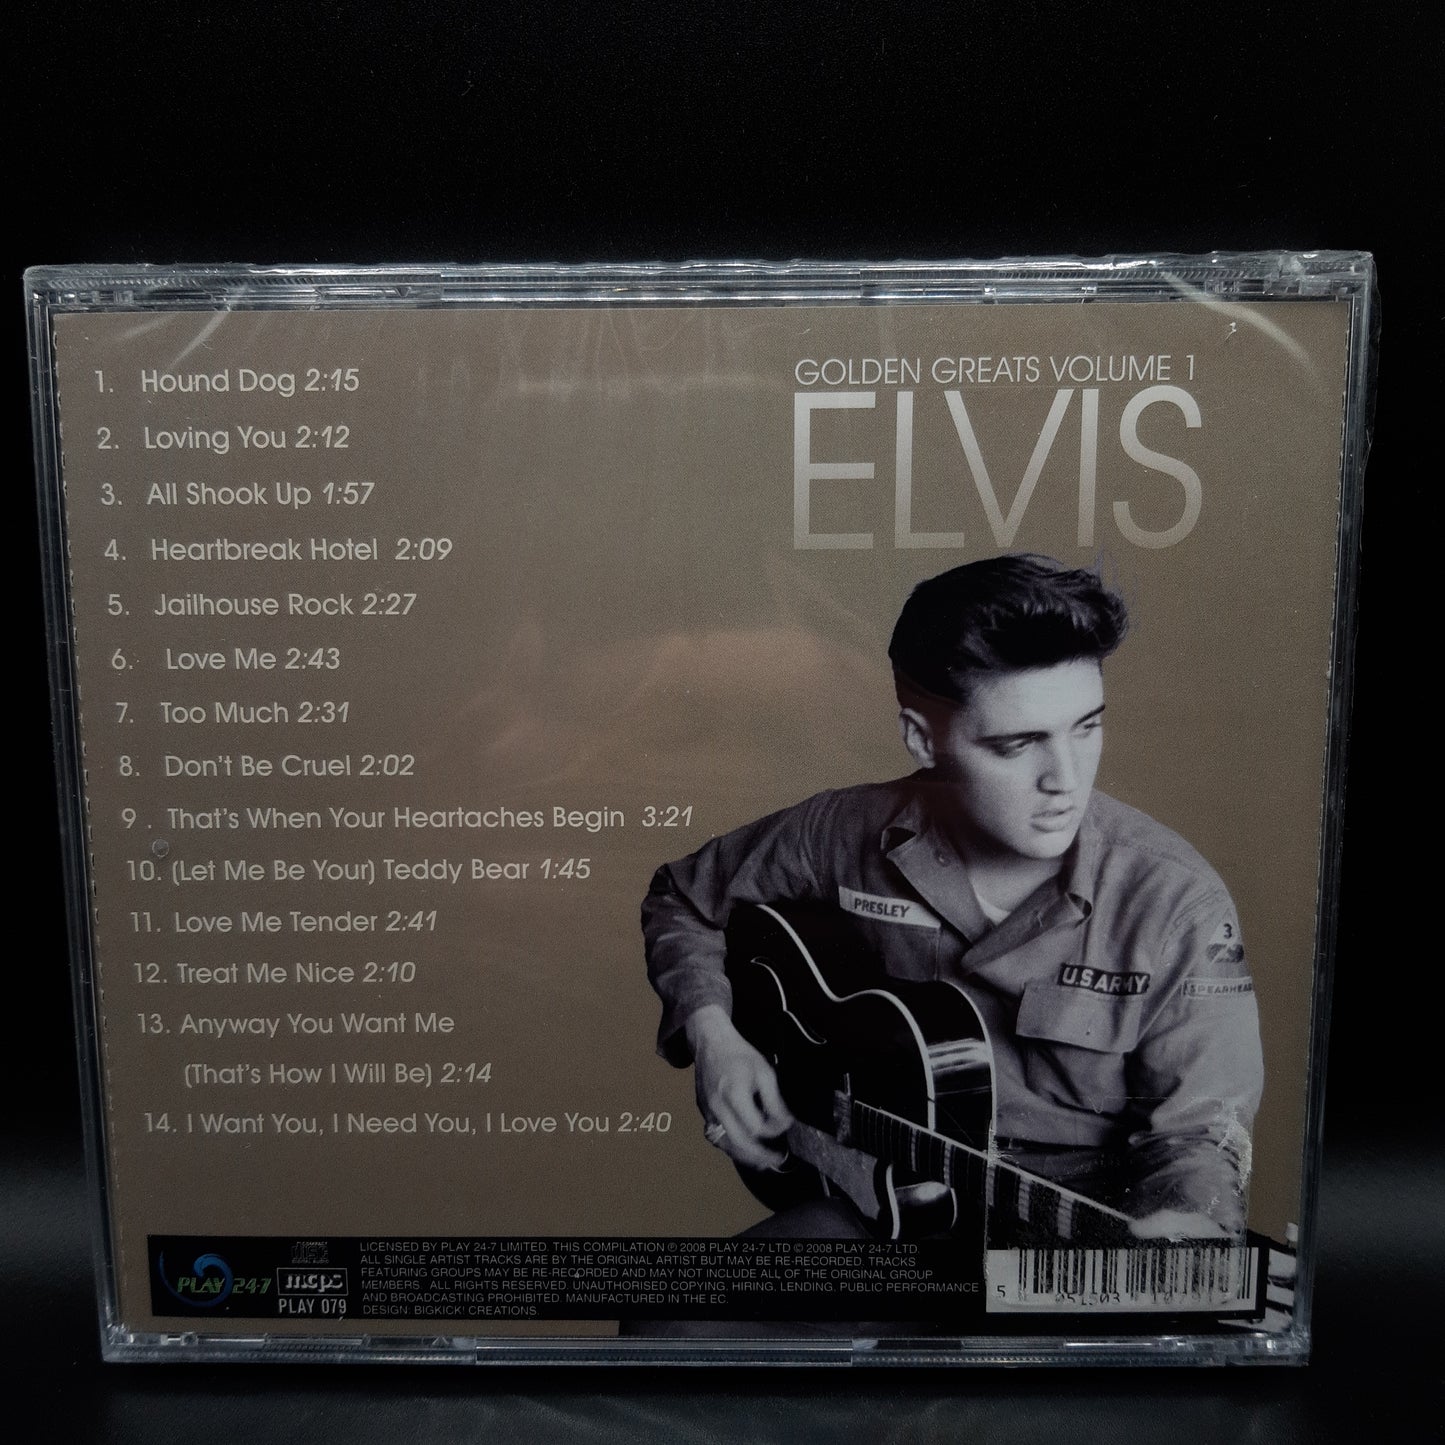 elvis - golden greats volume 1 - cd